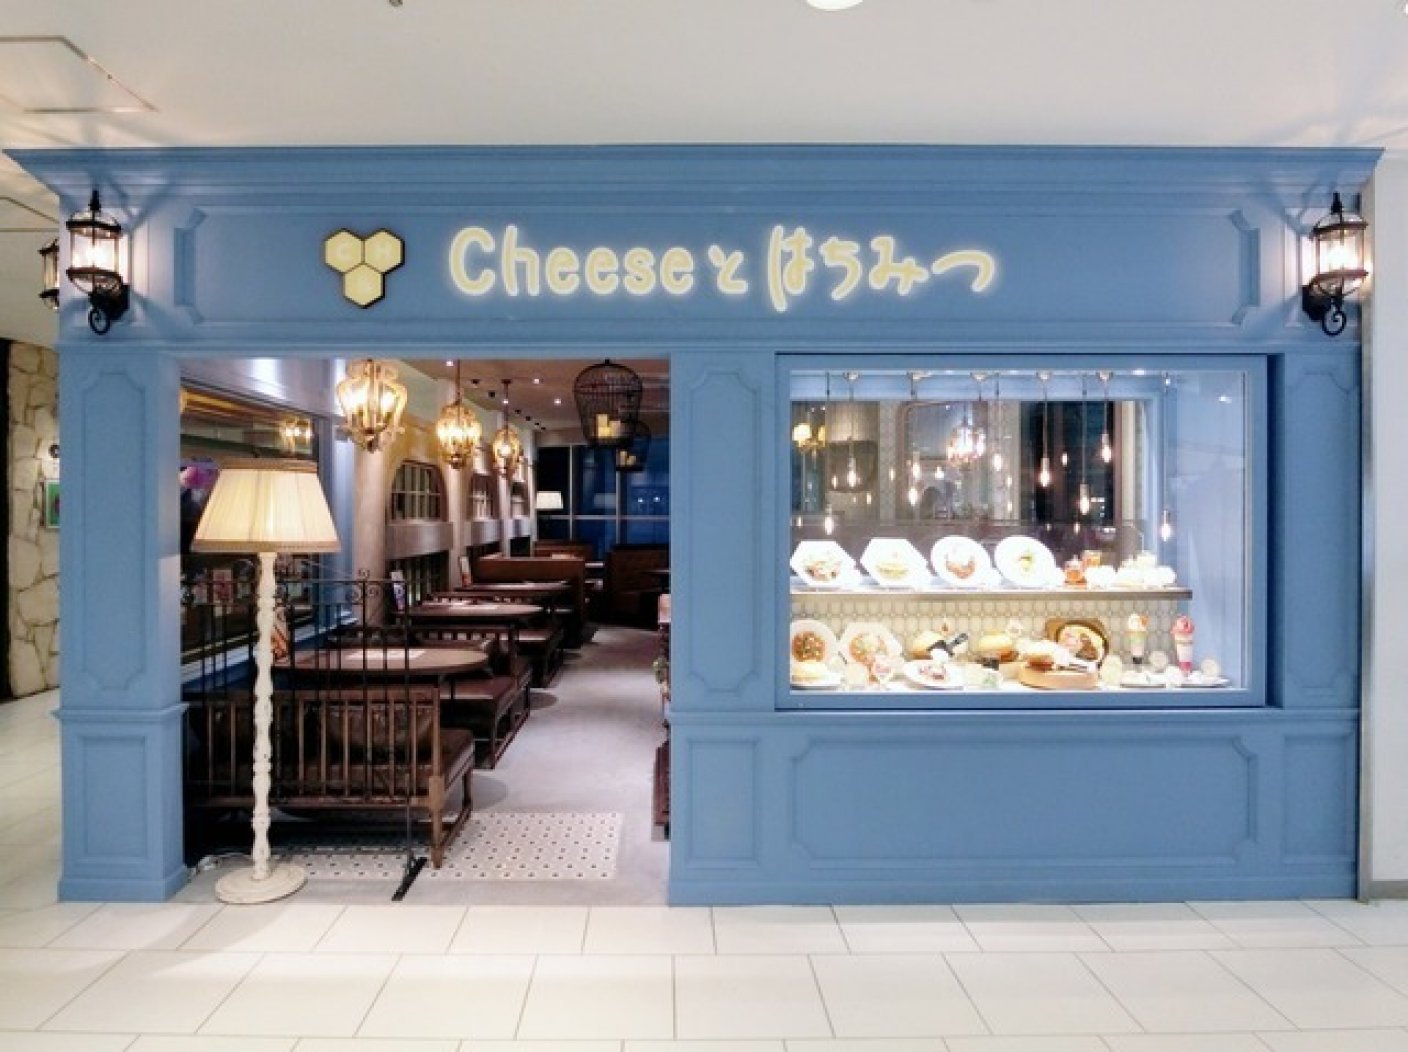 チーズとはちみつ 渋谷109店 の写真 1